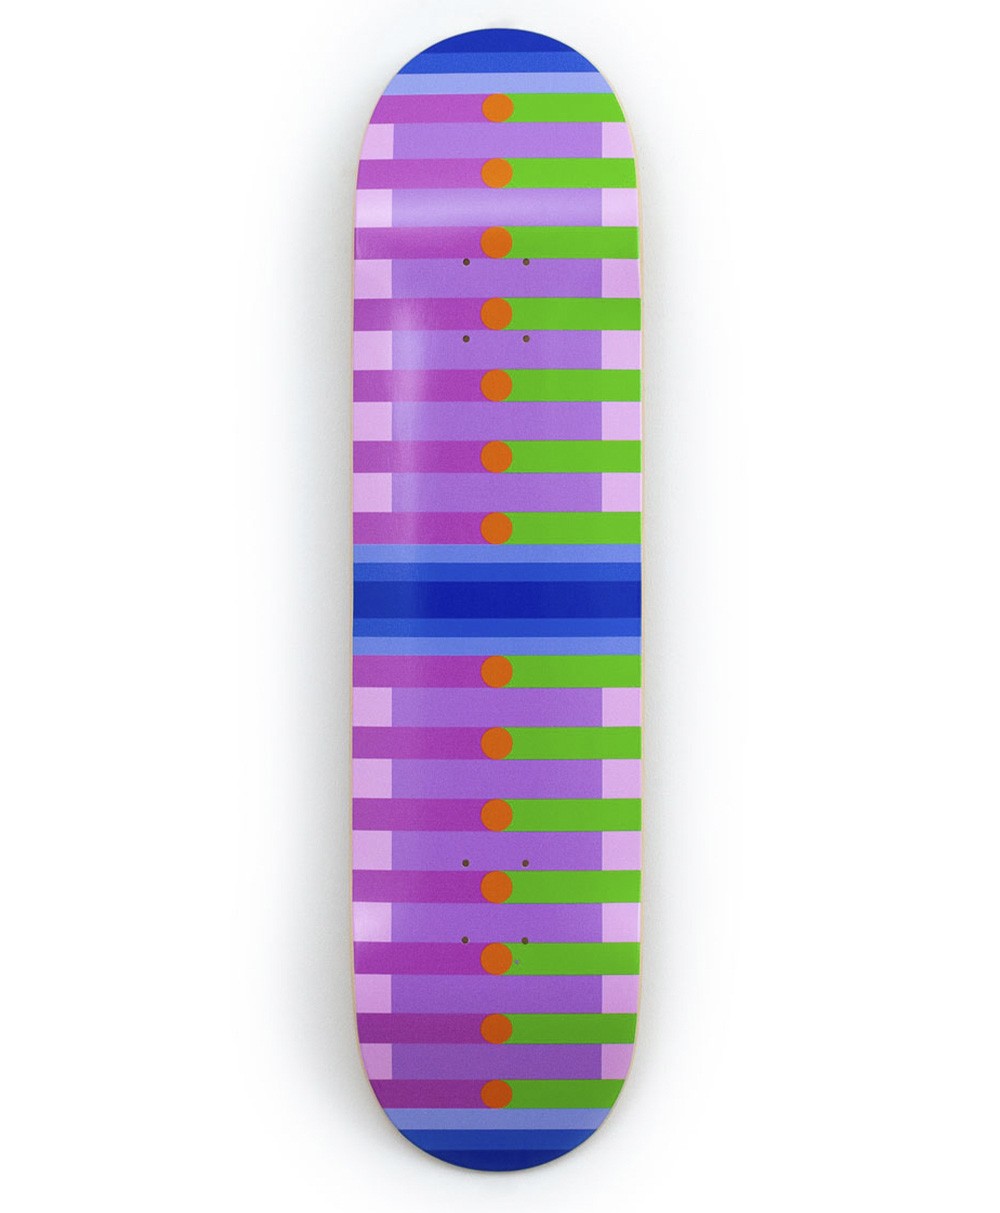 Dieses Produktbild zeigt das Skateboard Kunstobjekt x Yinka Ilori United we stand von The Skateroom im RAUM concept store.